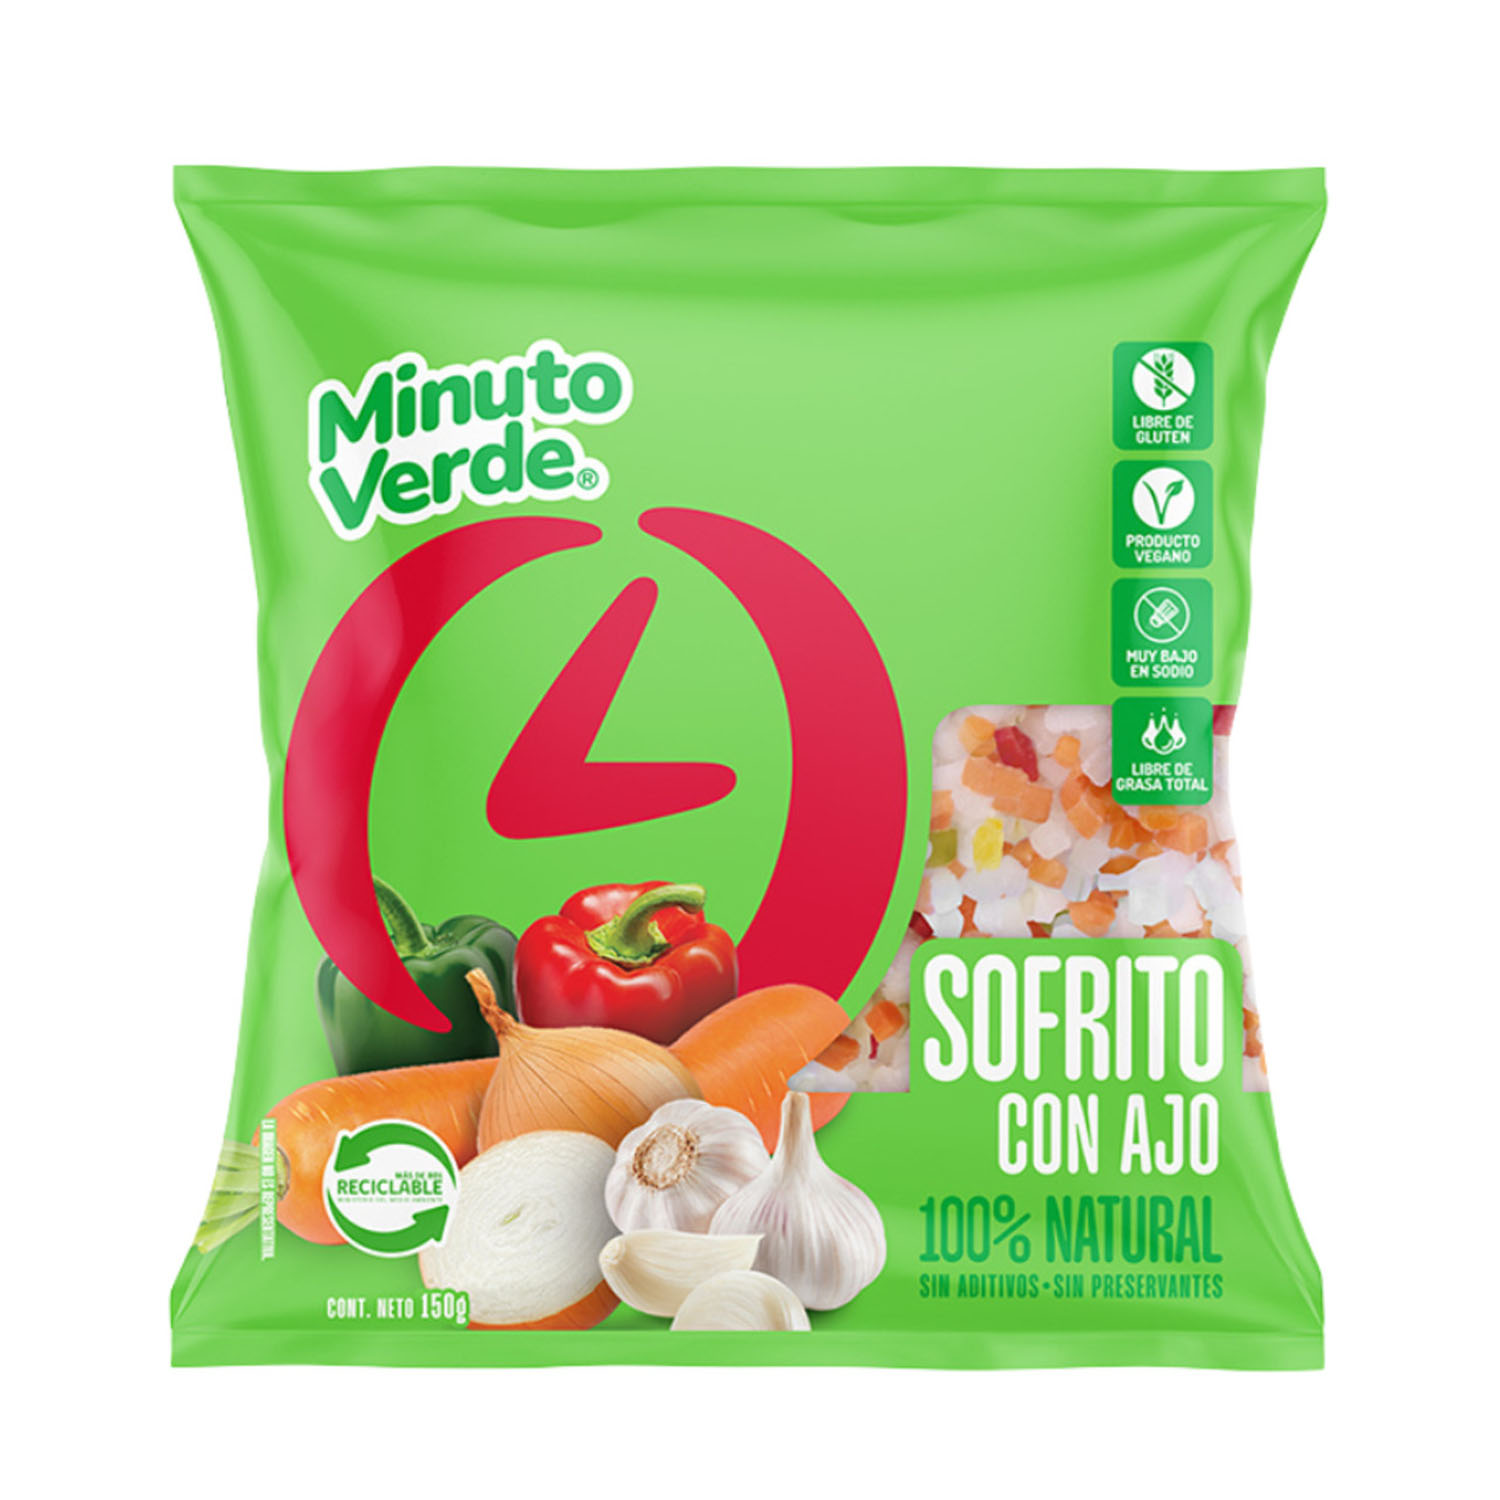 Congelados AyF - Nuevos productos a nuestra familia de congelados Dientes  de ajo congelado minuto verde 150gr a $900